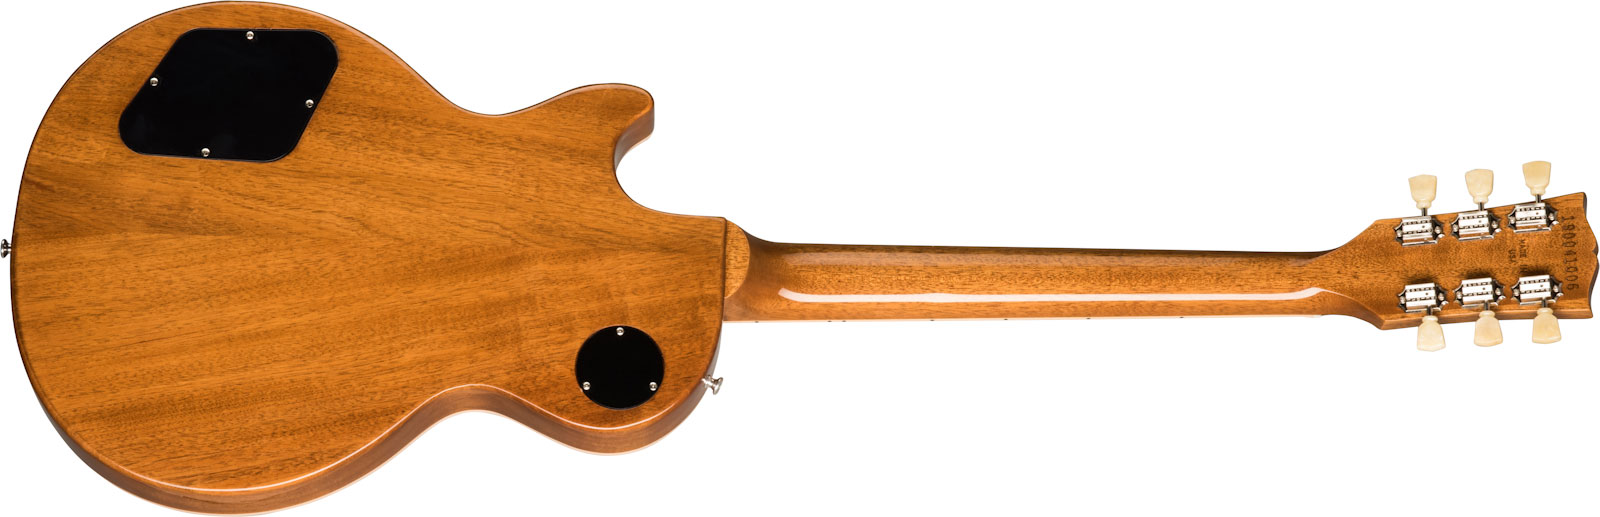 Gibson Les Paul Standard 50s Original 2h Ht Rw - Gold Top - Enkel gesneden elektrische gitaar - Variation 1